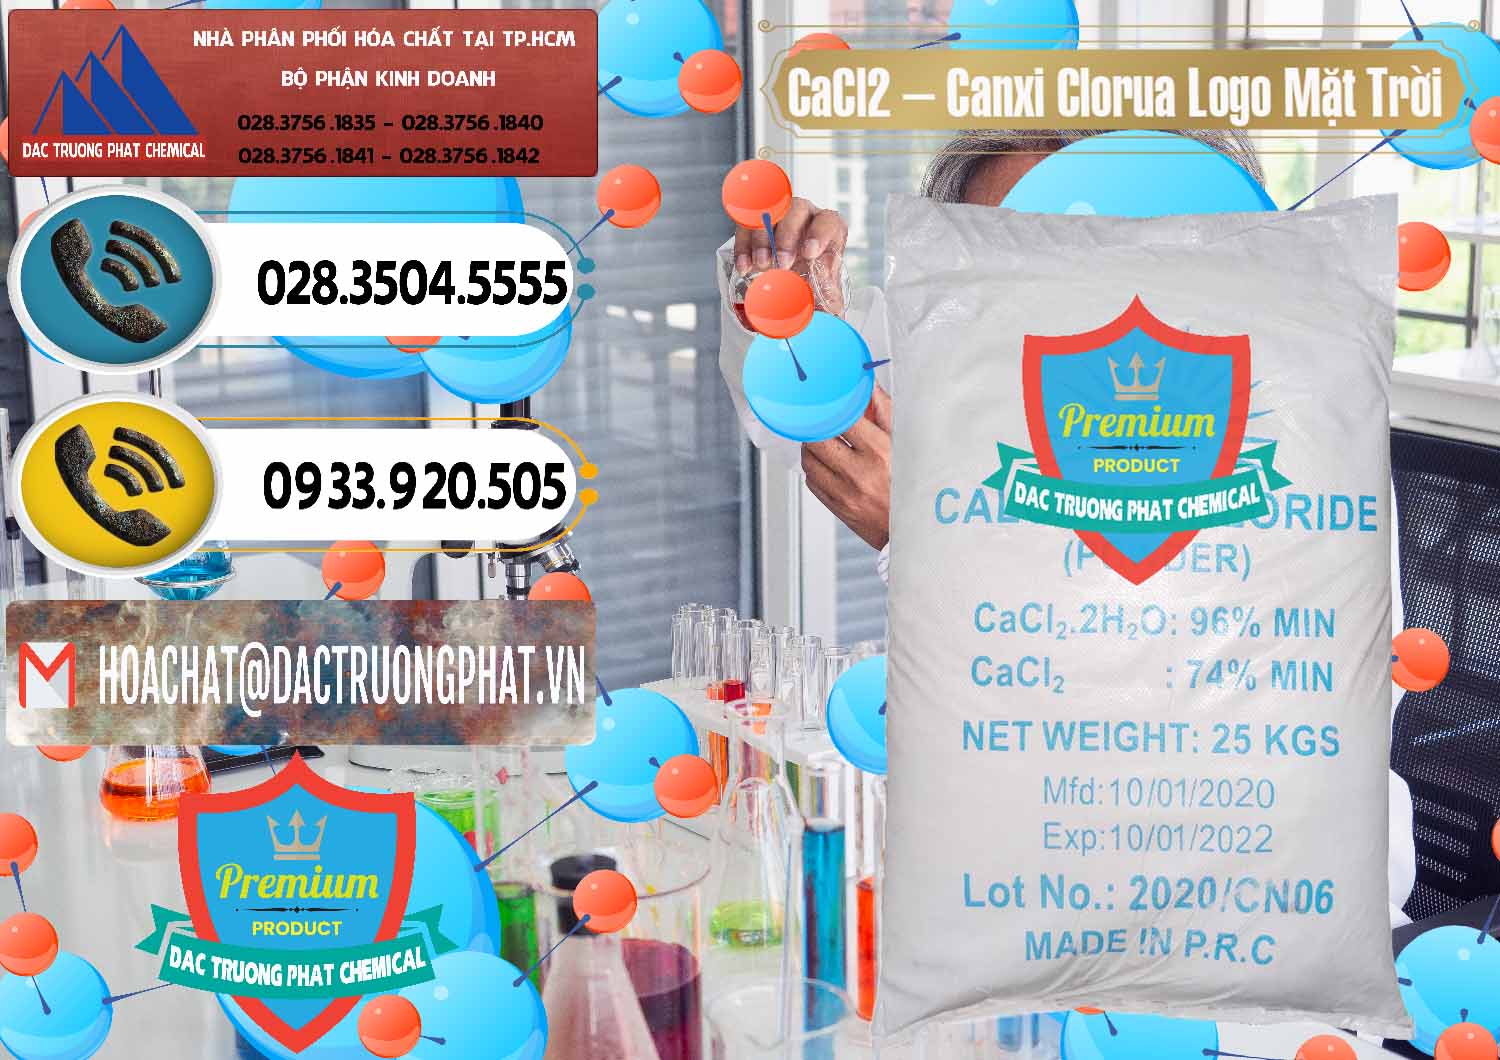 Phân phối _ bán CaCl2 – Canxi Clorua 96% Logo Mặt Trời Trung Quốc China - 0041 - Cty nhập khẩu và cung cấp hóa chất tại TP.HCM - hoachatdetnhuom.vn